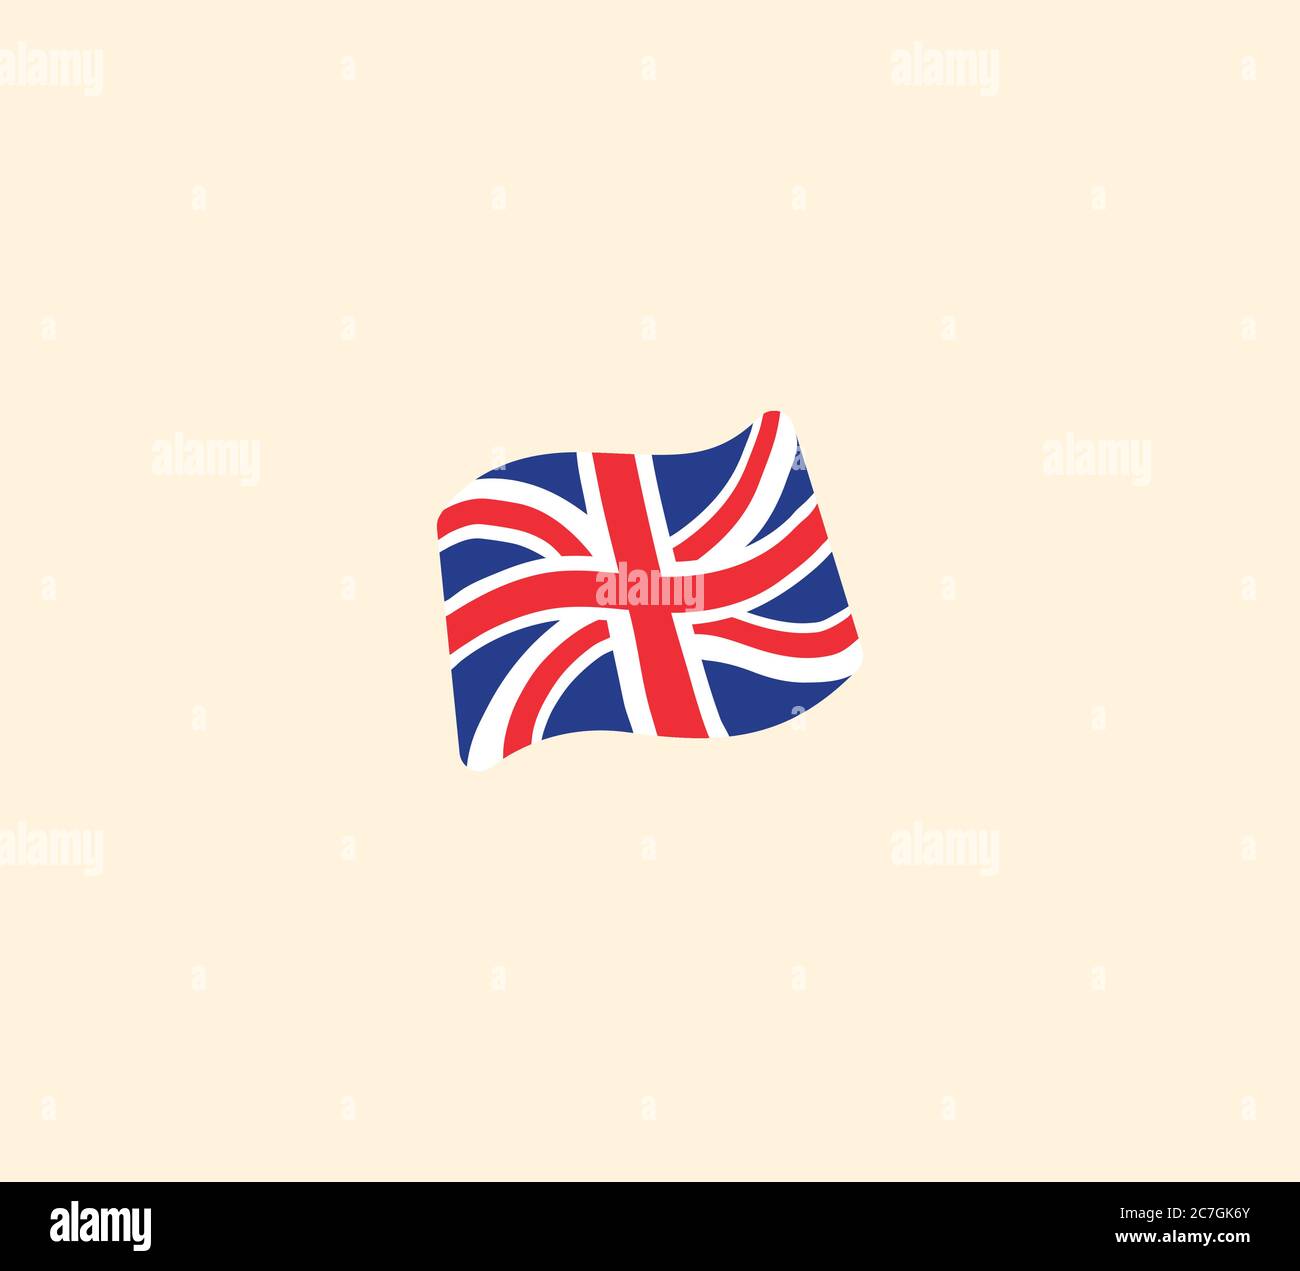 Illustrazione isolata del vettore della bandiera della Gran Bretagna. Icona della bandiera della Gran Bretagna Illustrazione Vettoriale